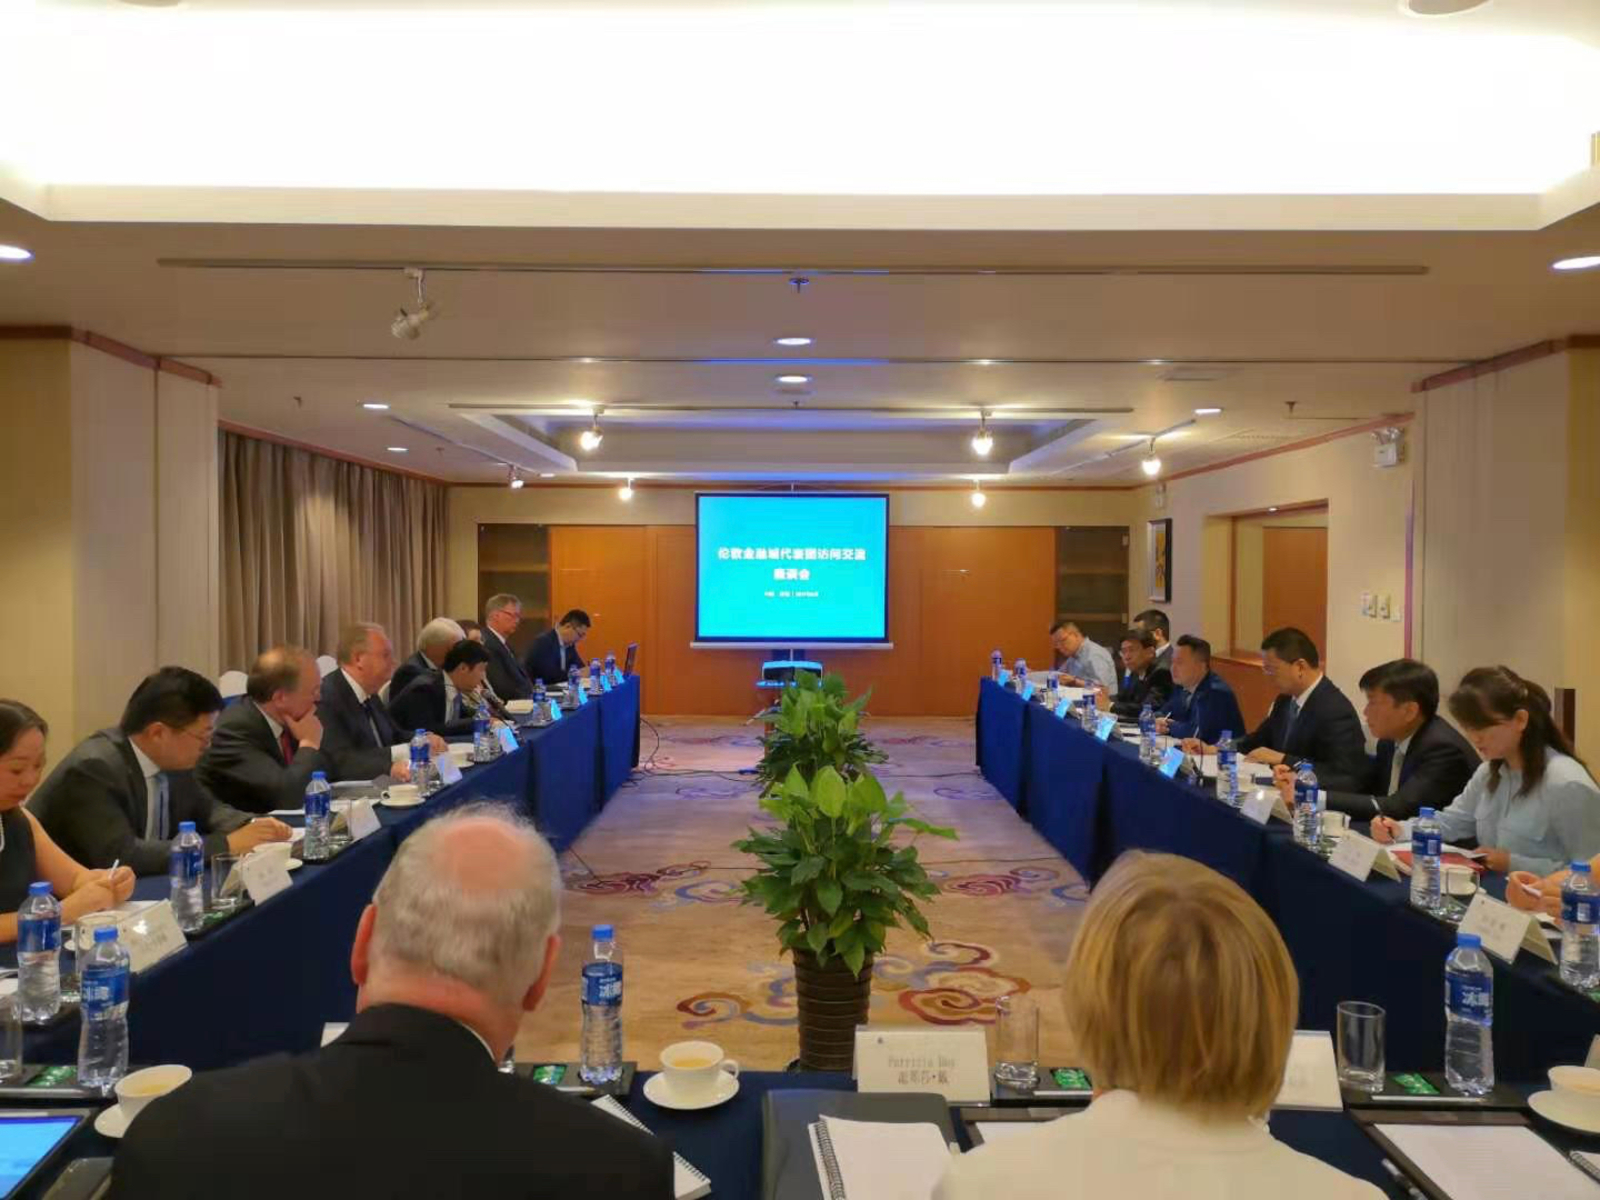 FSG meeting in Shanghai